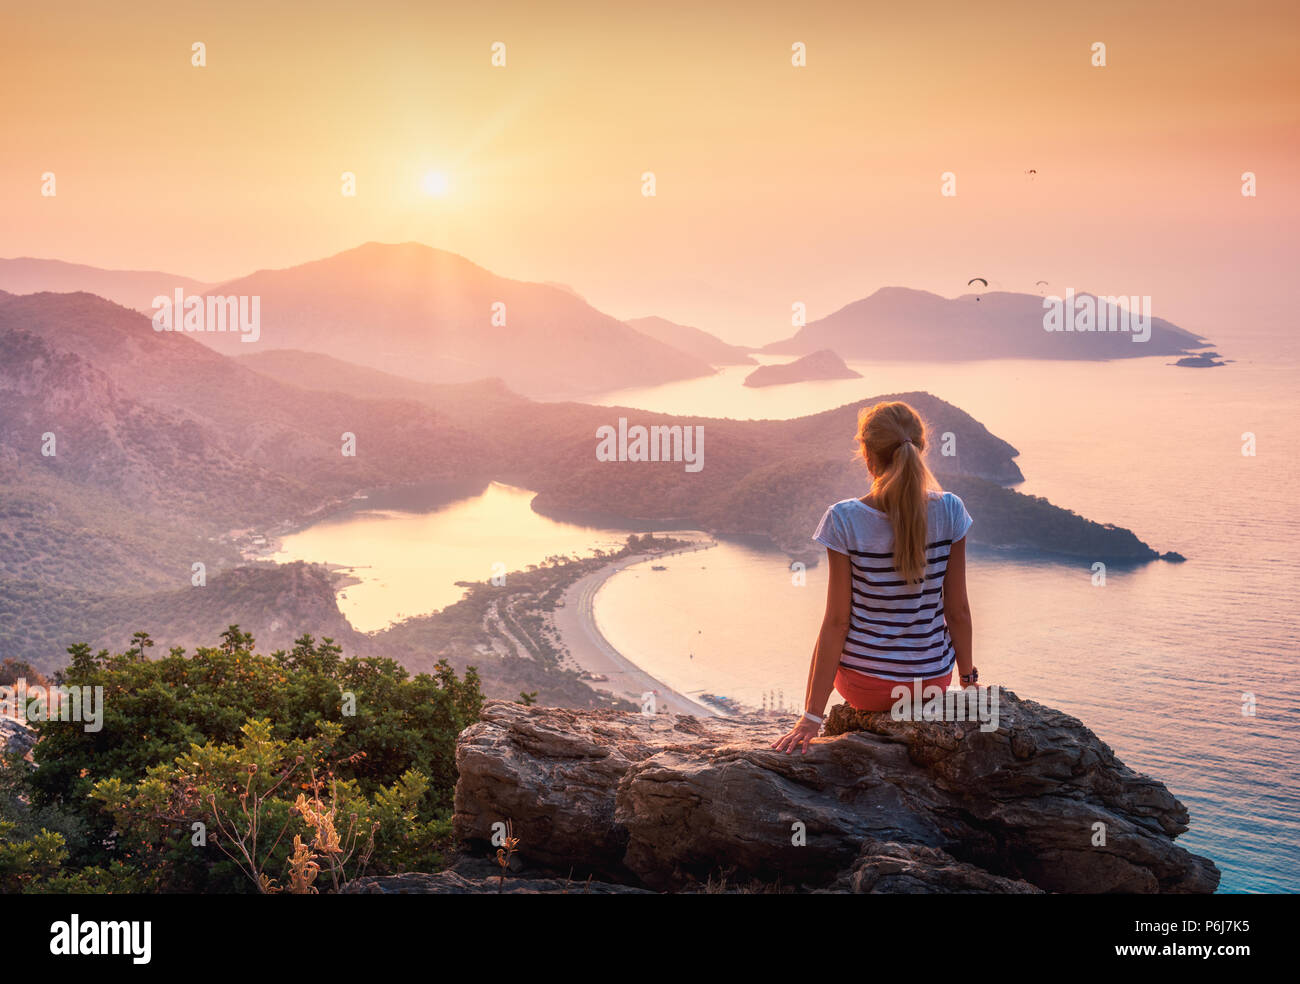 Jeune femme assise sur le haut du rocher et regardant la mer et les montagnes au soleil colorés en été. Paysage avec vue sur la mer, la montagne, fille ridg Banque D'Images